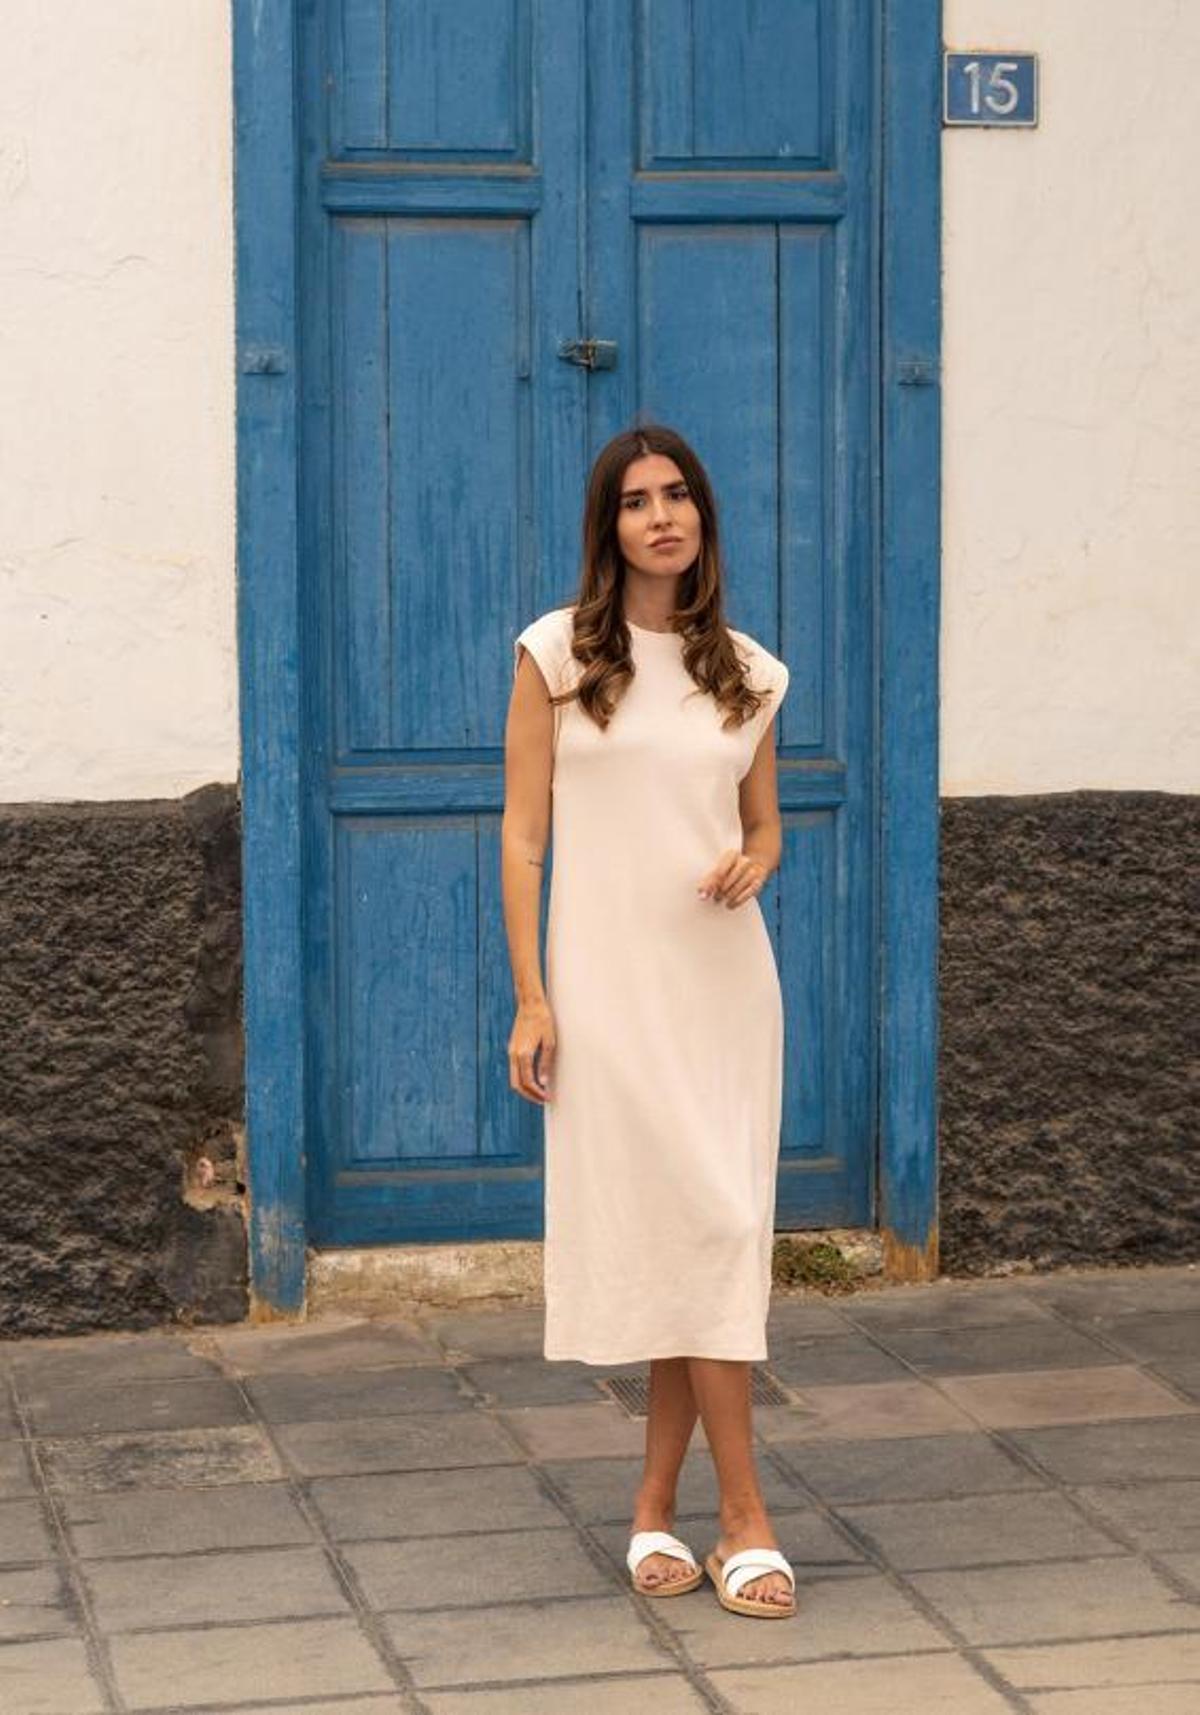 Mery Turiel con su vestido blanco para la línea Tex de Carrefour